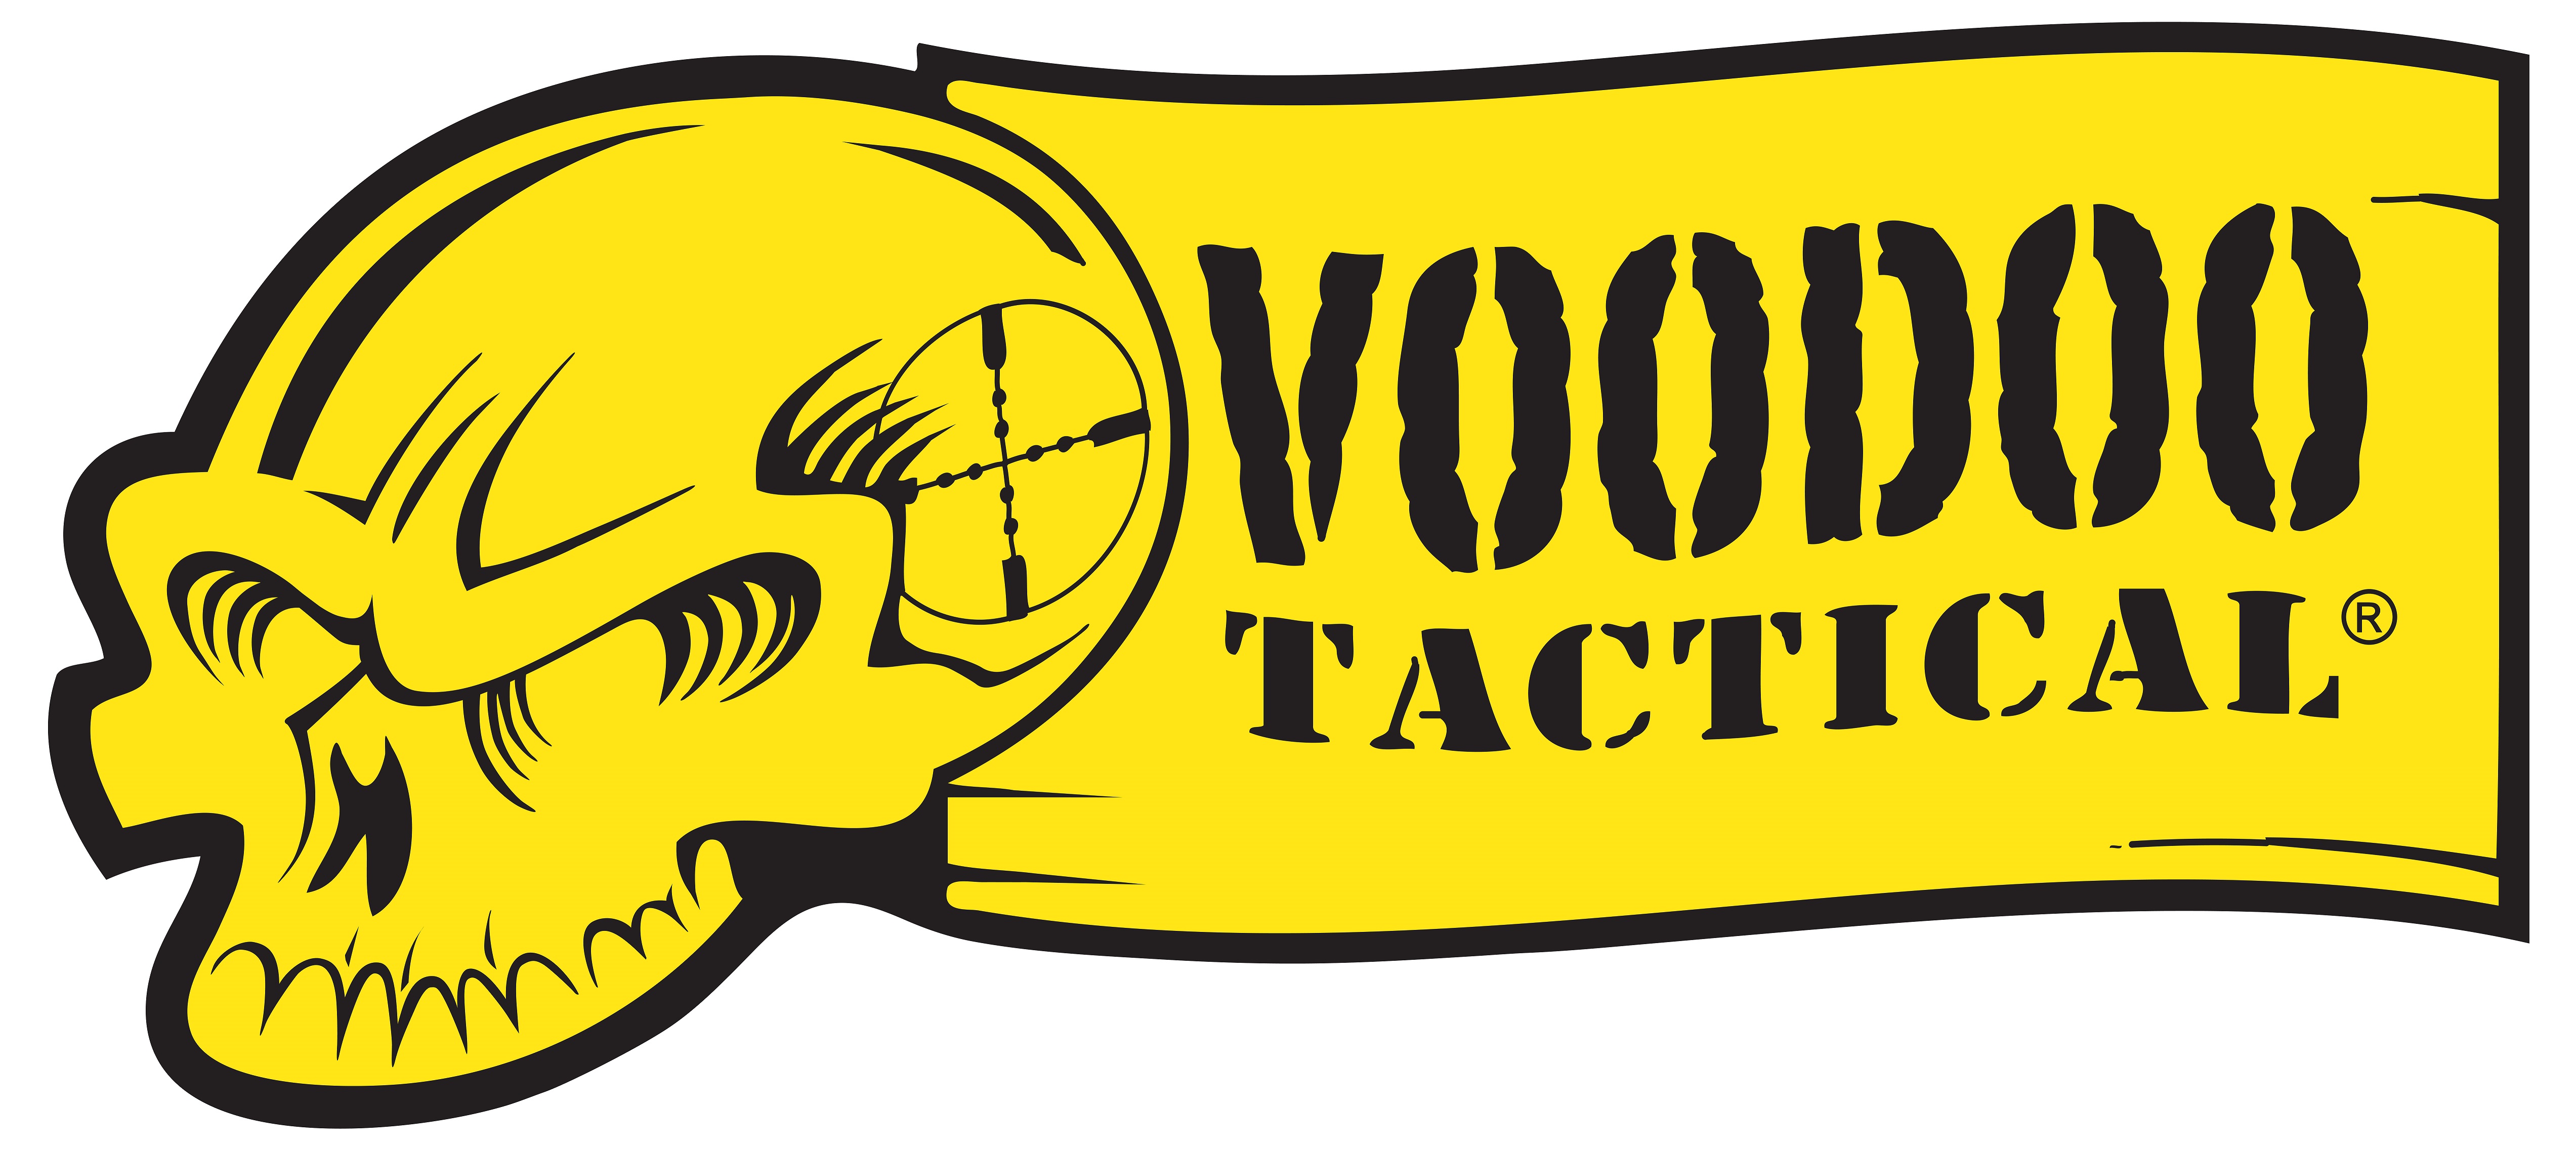 Voodoo Tactical